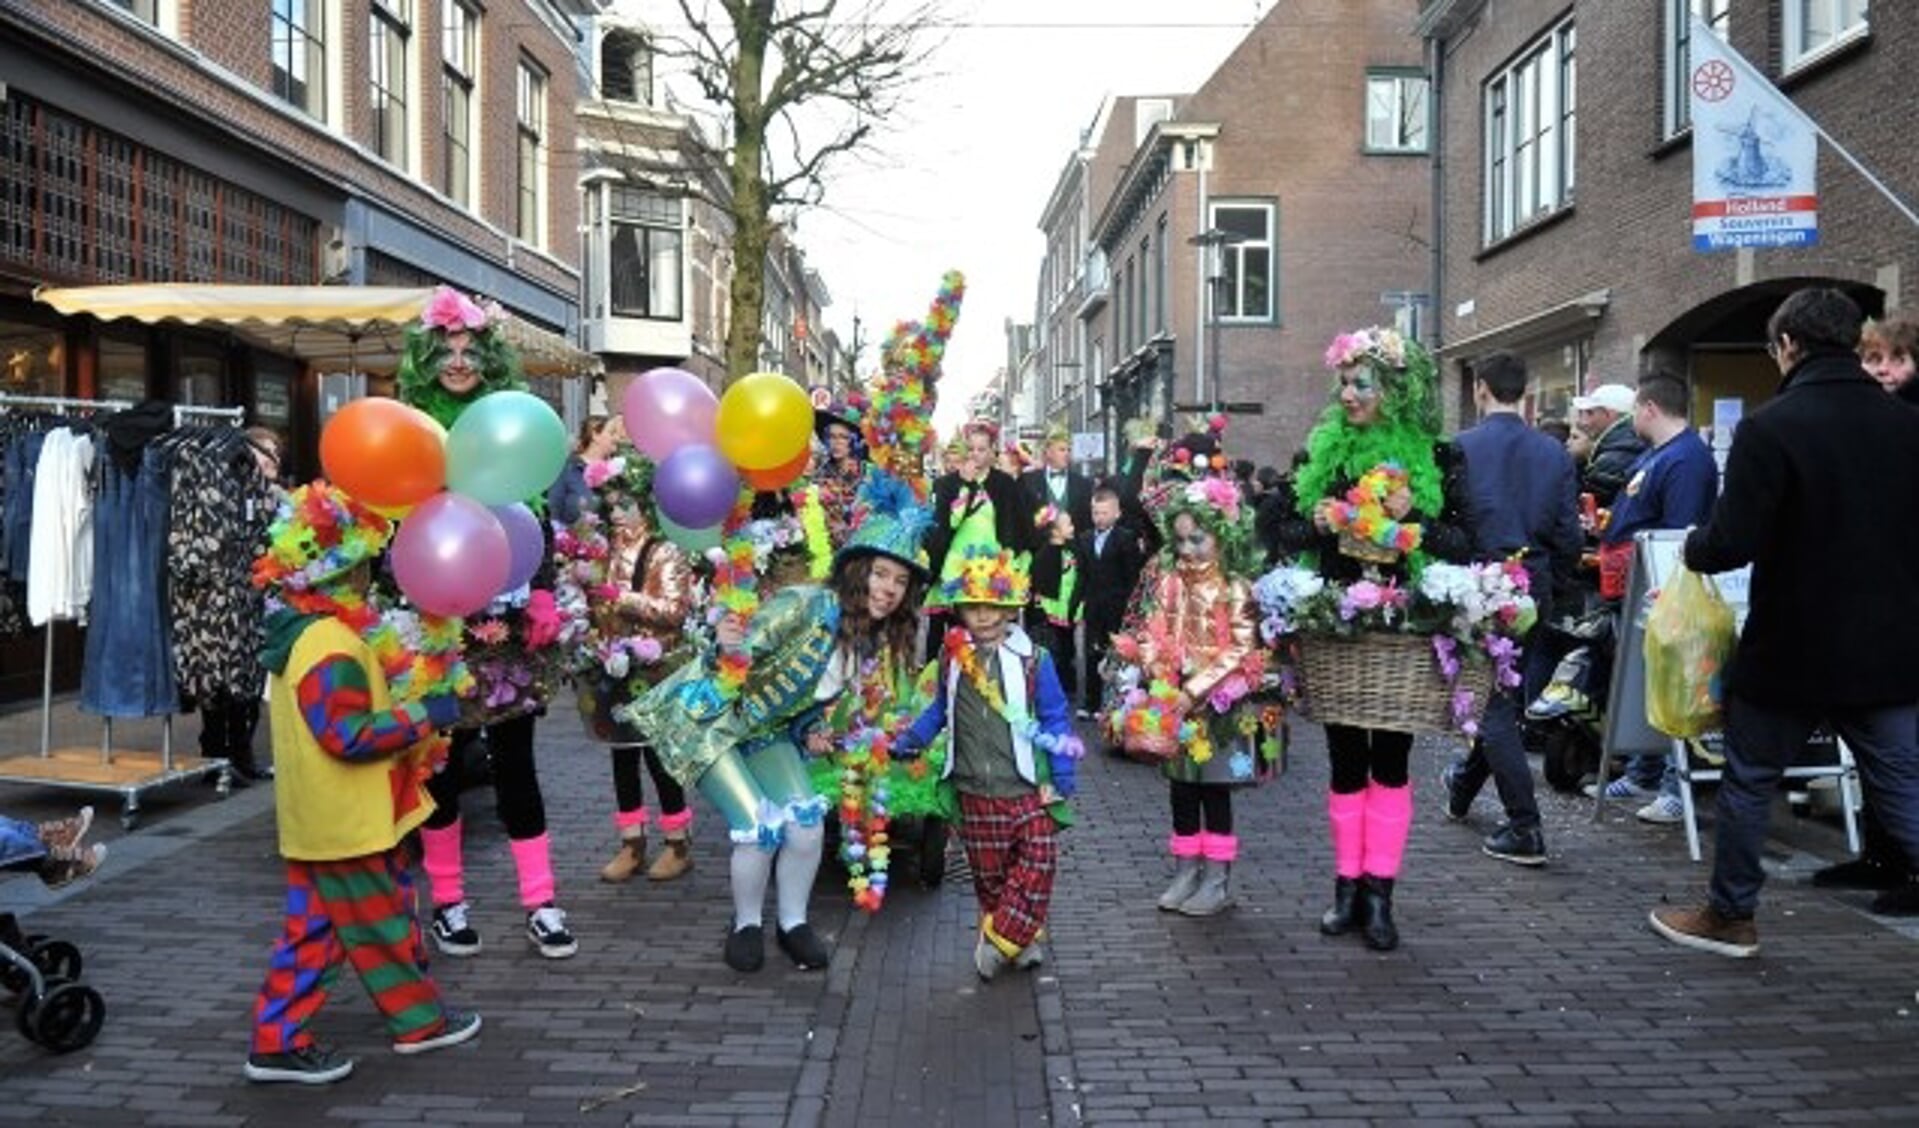 Foto: De Wageningse carnavalsverenigingen hielden zaterdagmiddag een kleurrijke en smaakvolle optocht. (foto: gertbudding.nl)